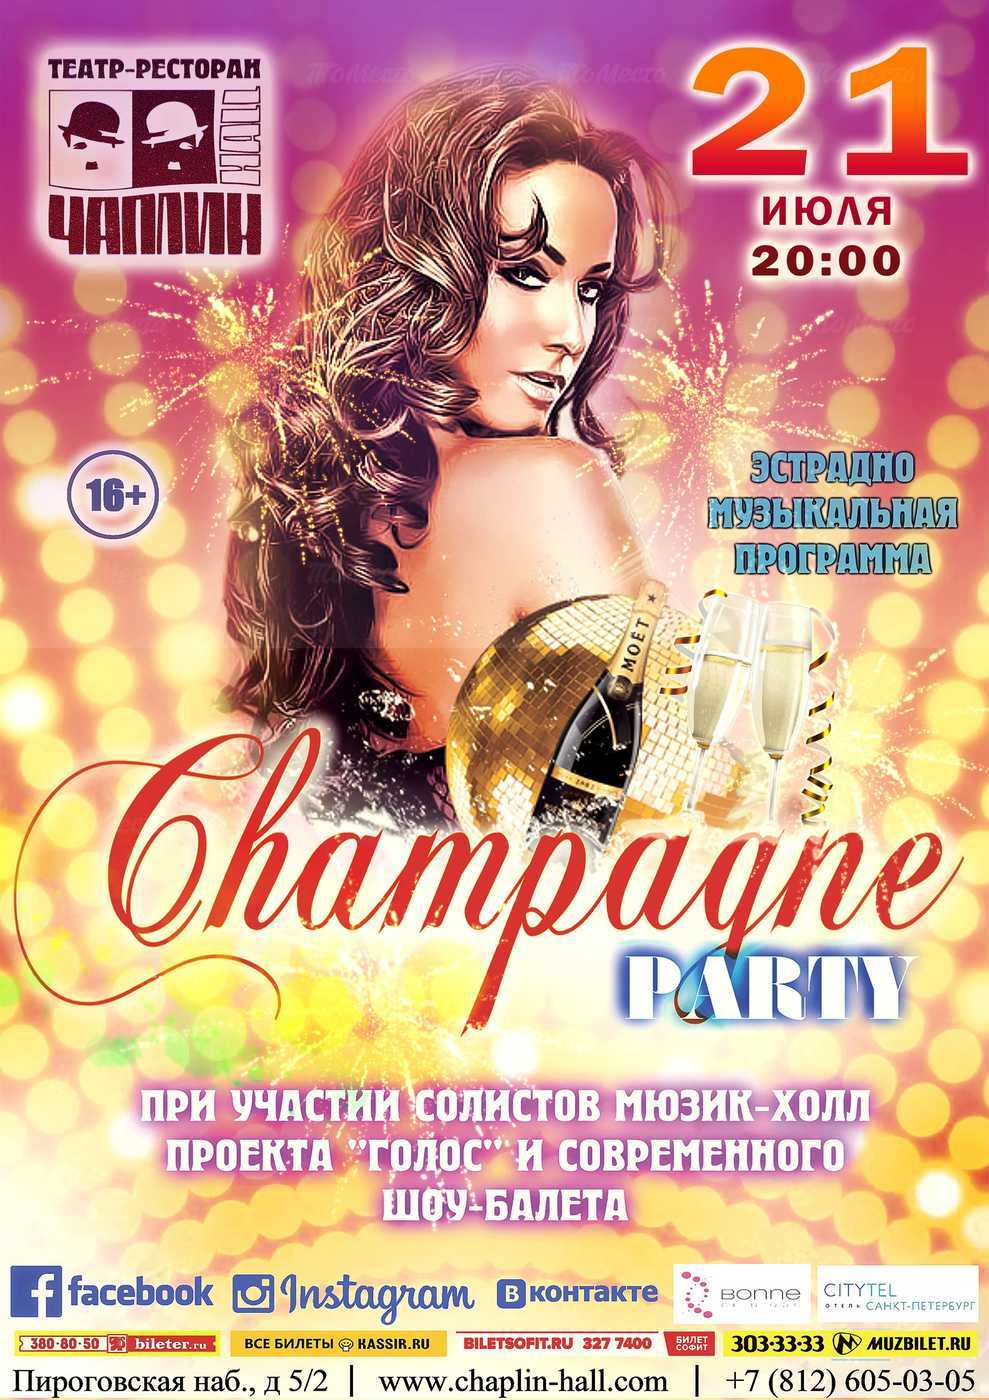 Эстрадно-музыкальная программа «Champagne party» (16+)